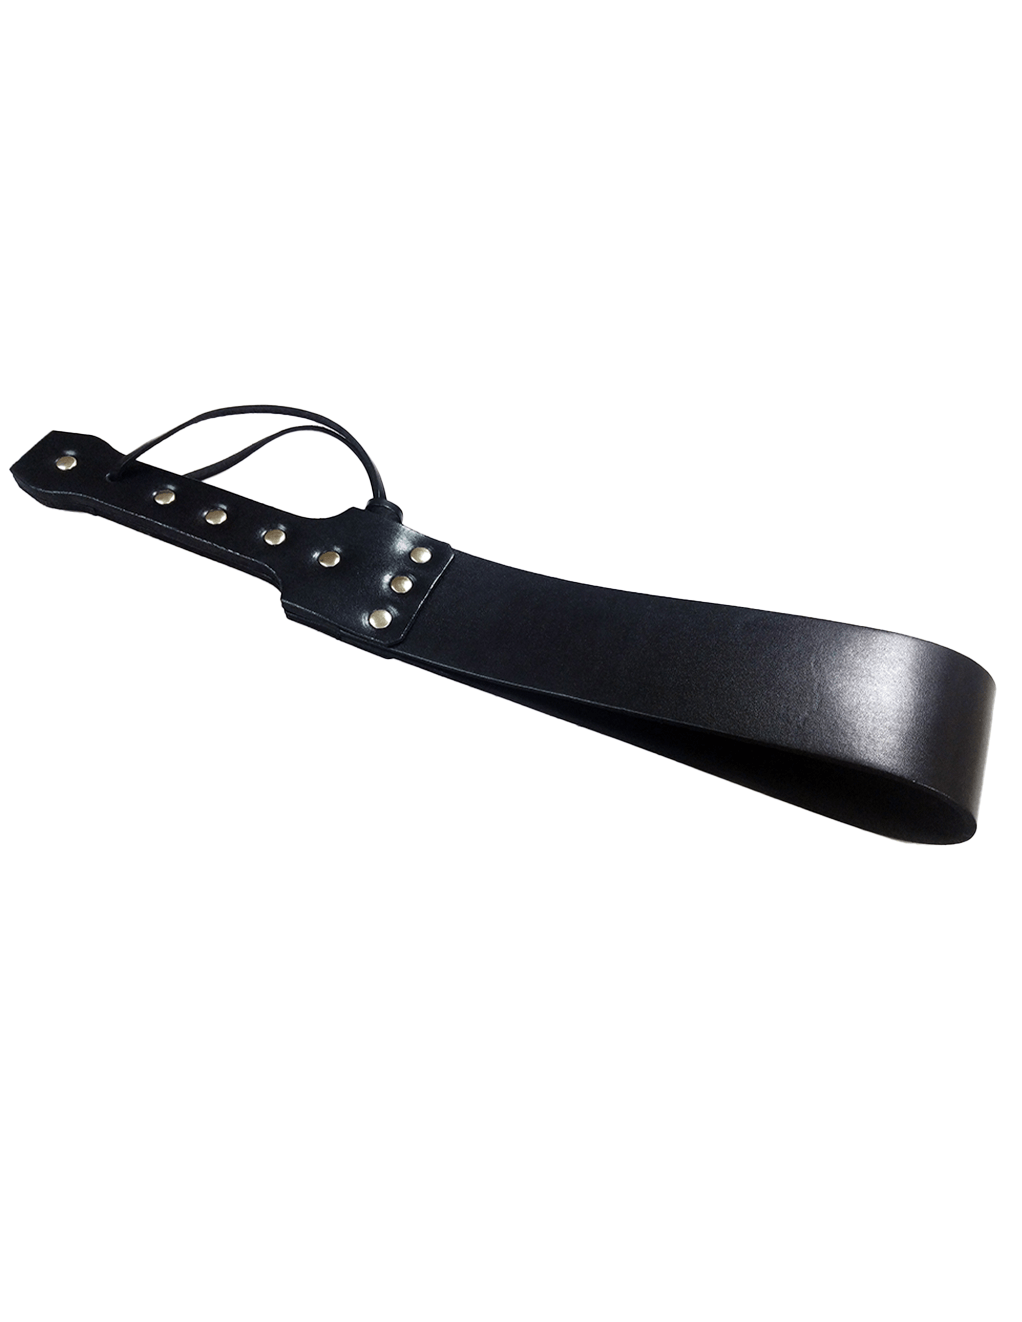 Rouge Folded Leather Paddle - Black - Main